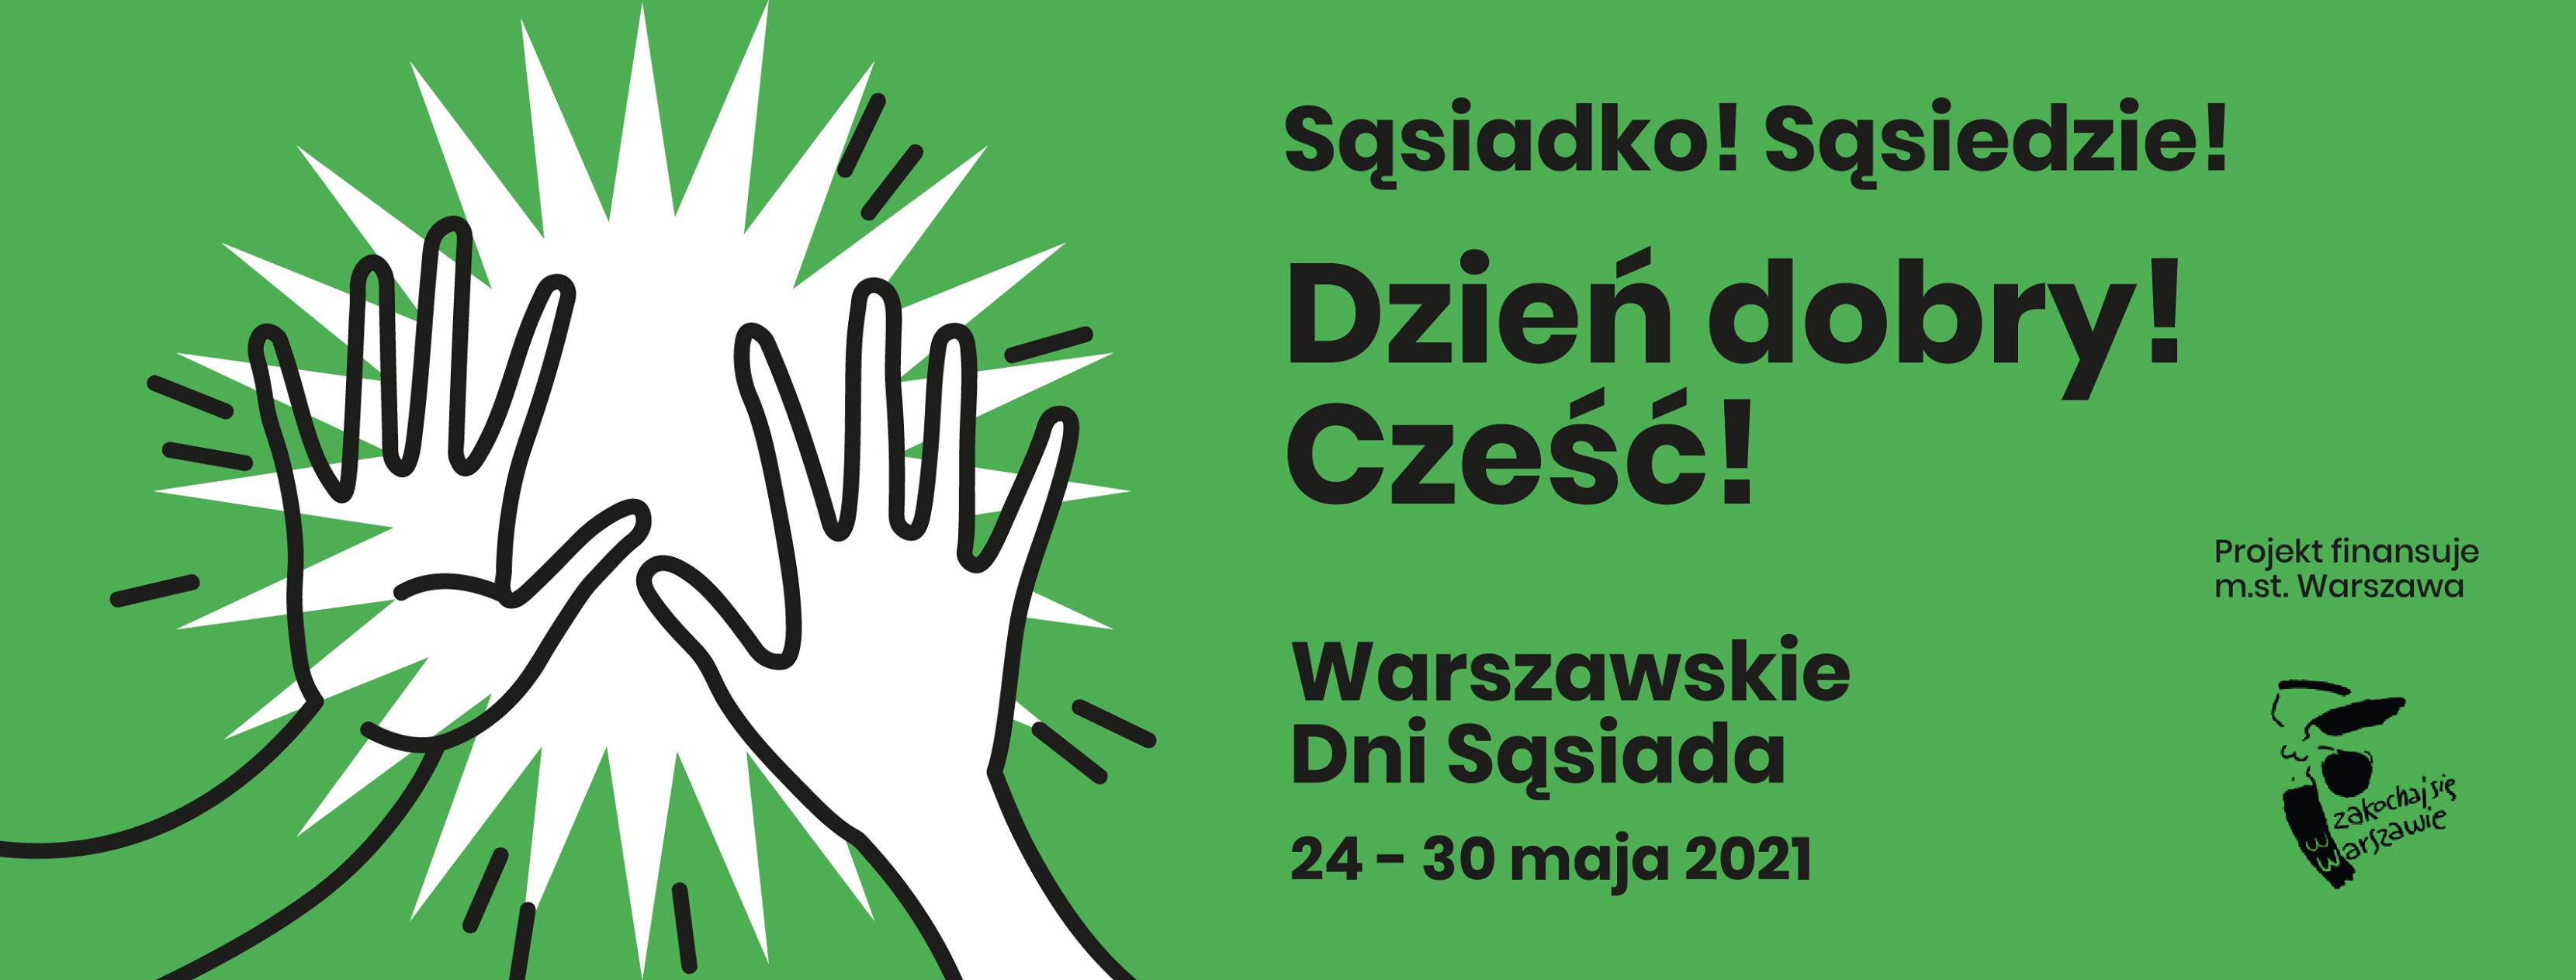 Plakat Warszawskich Dni Sąsiada 